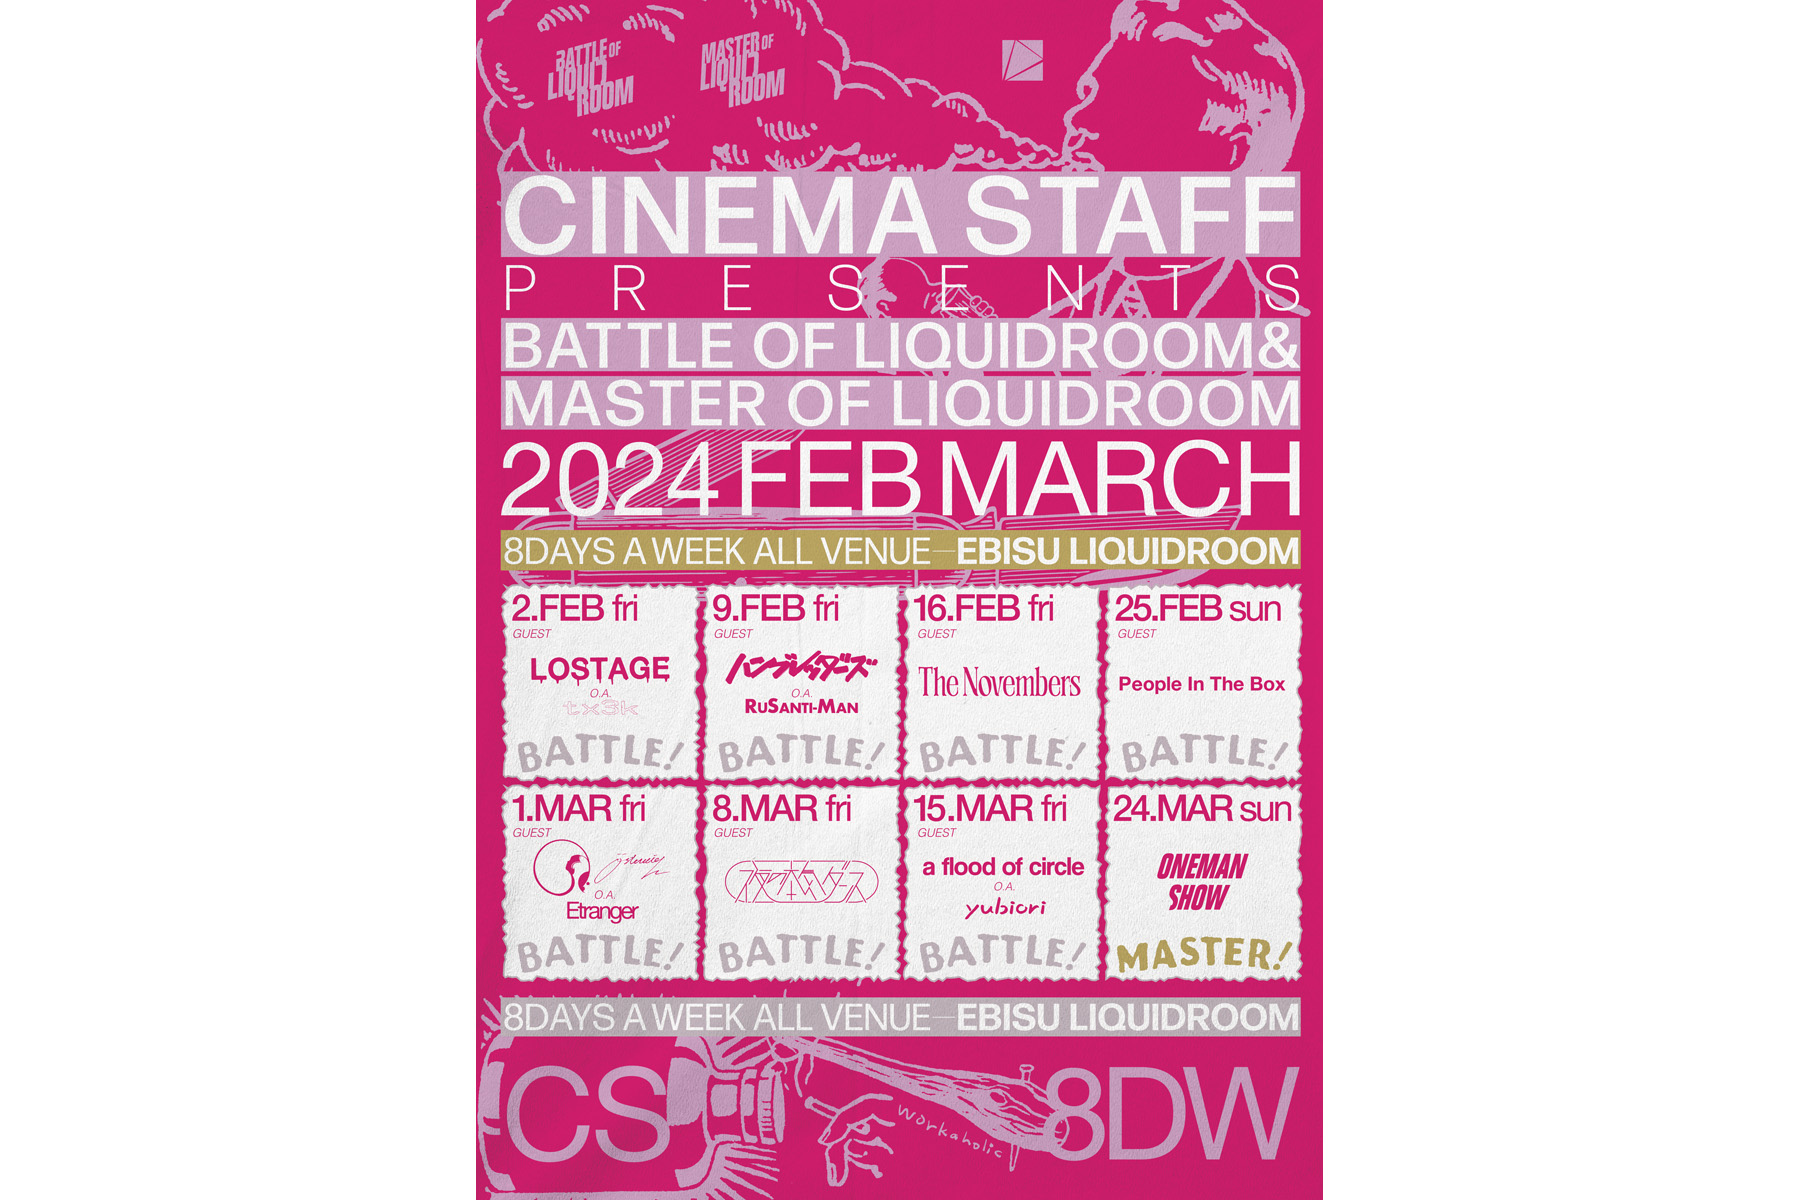 3/8,15,24 cinema staff